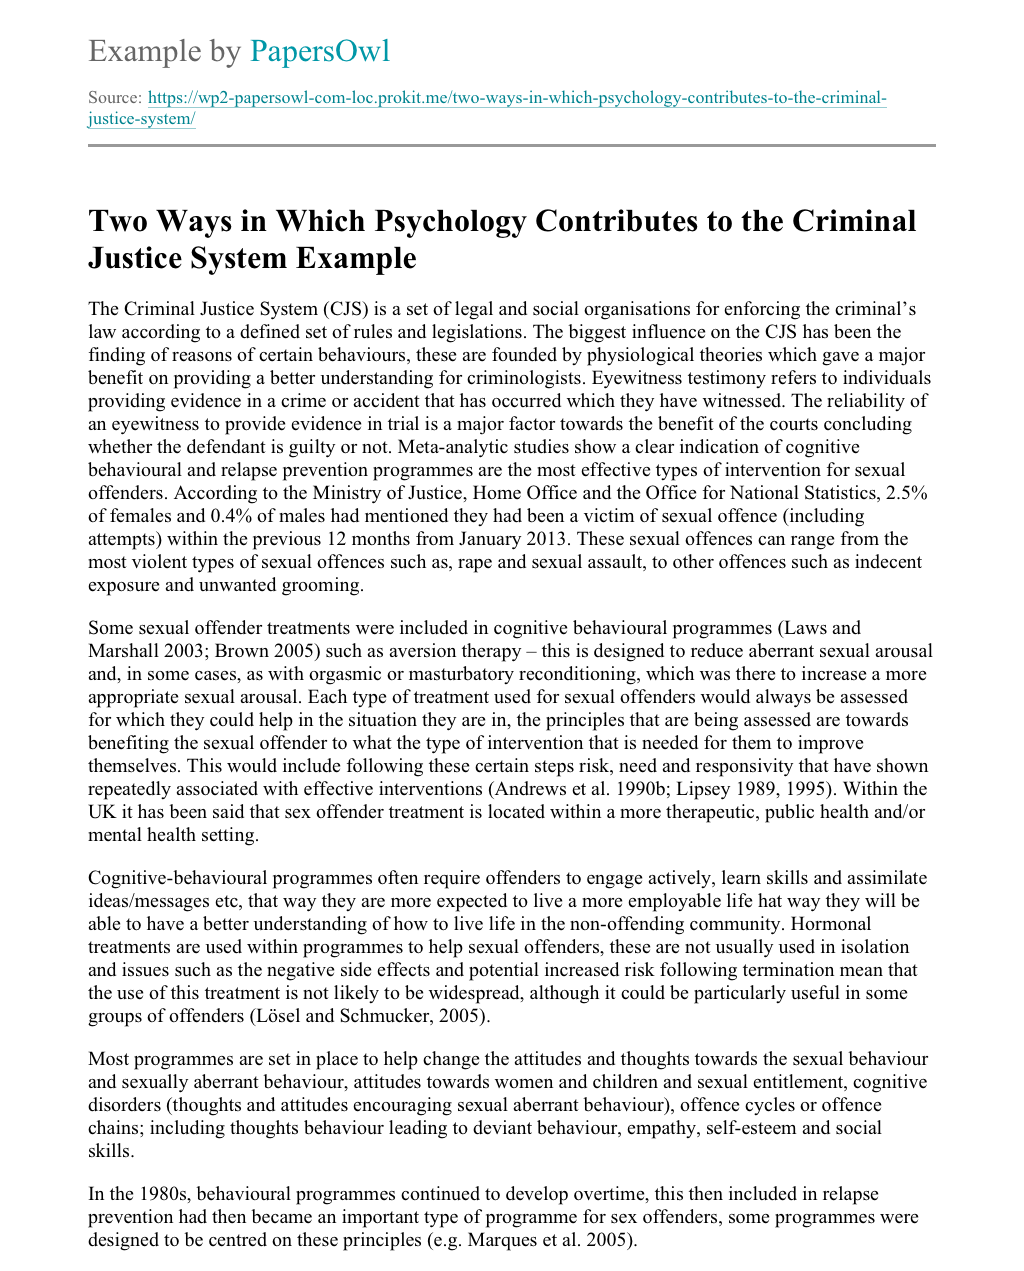 extended essay on criminal psychology